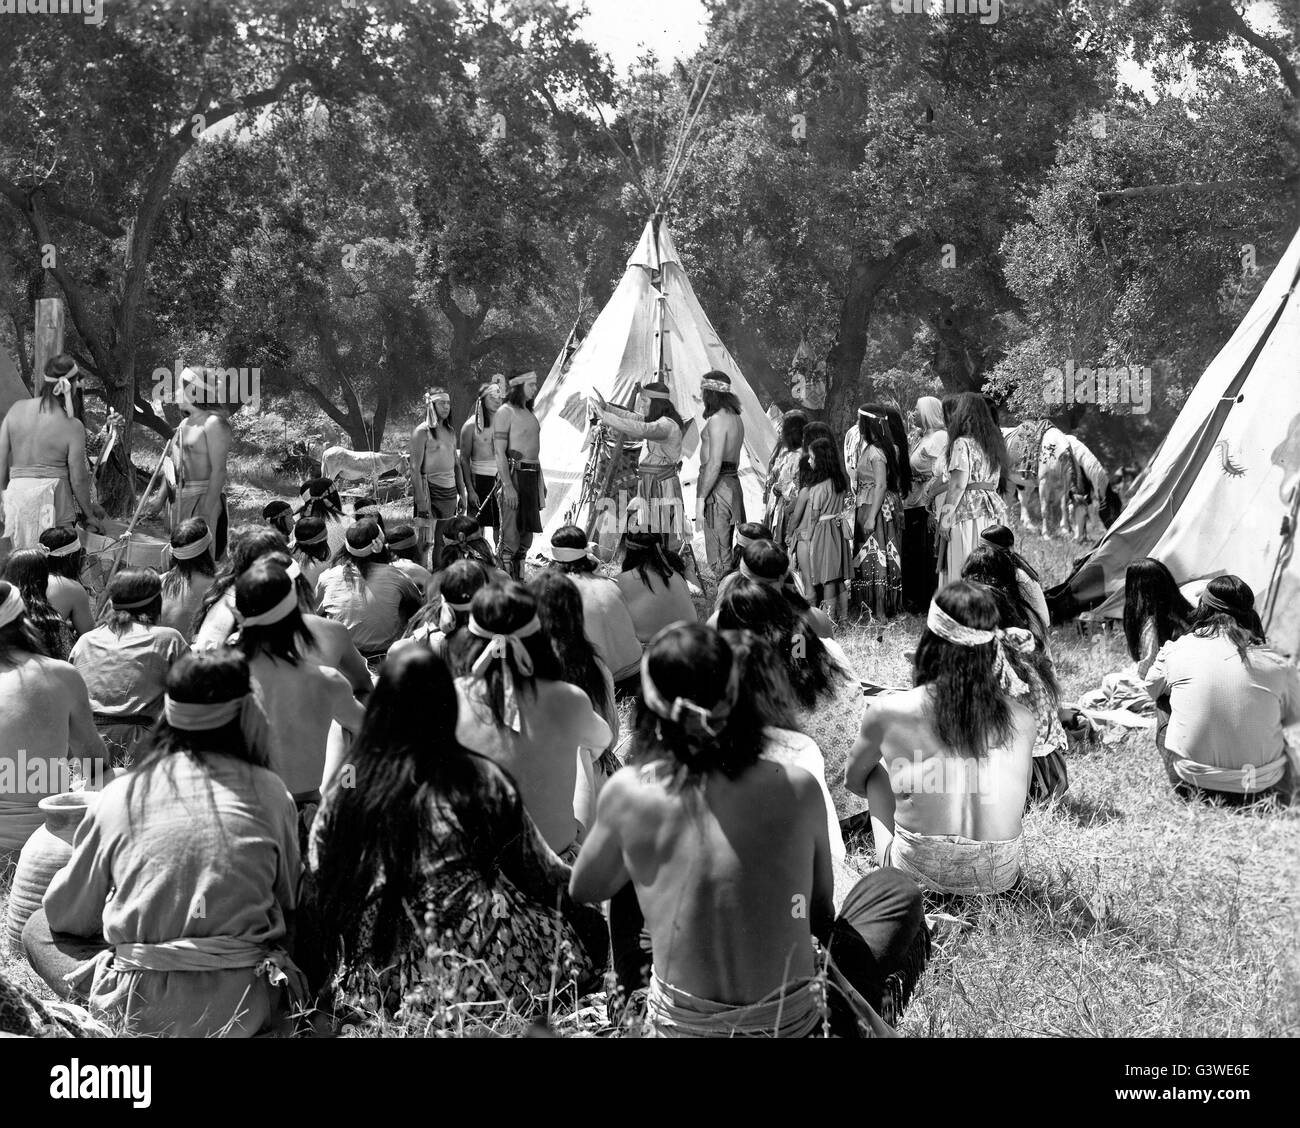 Apache Chief, aka: Adlerauge, der tapfere Sioux, USA 1949, Regie: Frank McDonald, Szenenfoto beim Sioux-Stamm Stock Photo